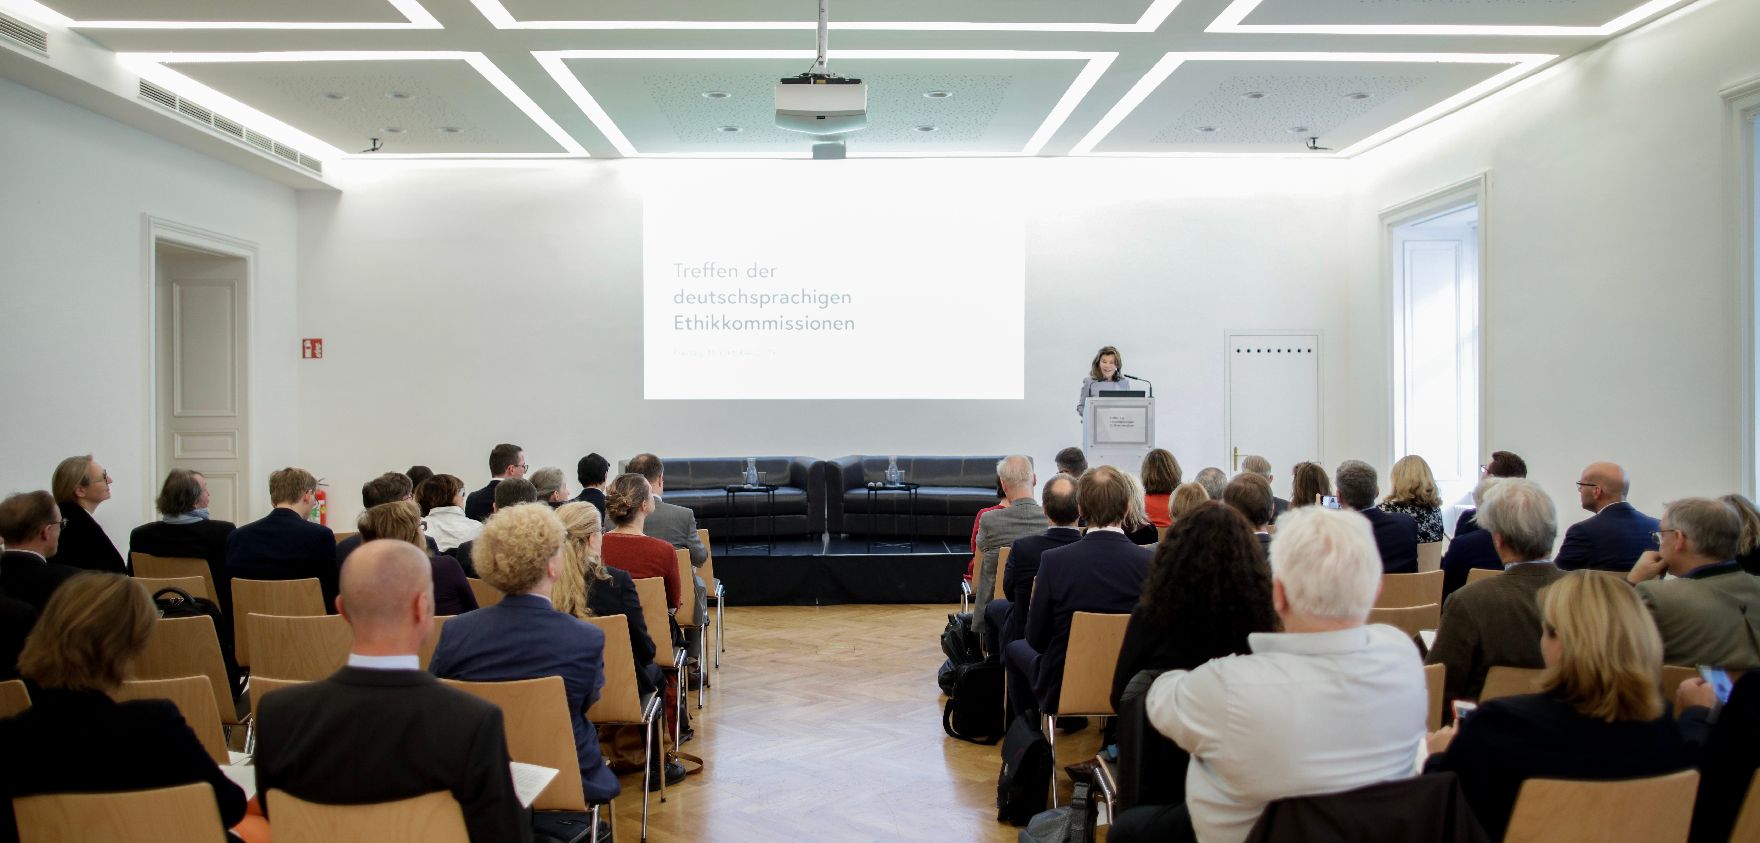 Am 11. Oktober 2019 nahm Bundeskanzlerin Brigitte Bierlein an dem Treffen der deutschsprachigen Ethikkommissionen zum Thema "Desinformation in der Medizin" teil.